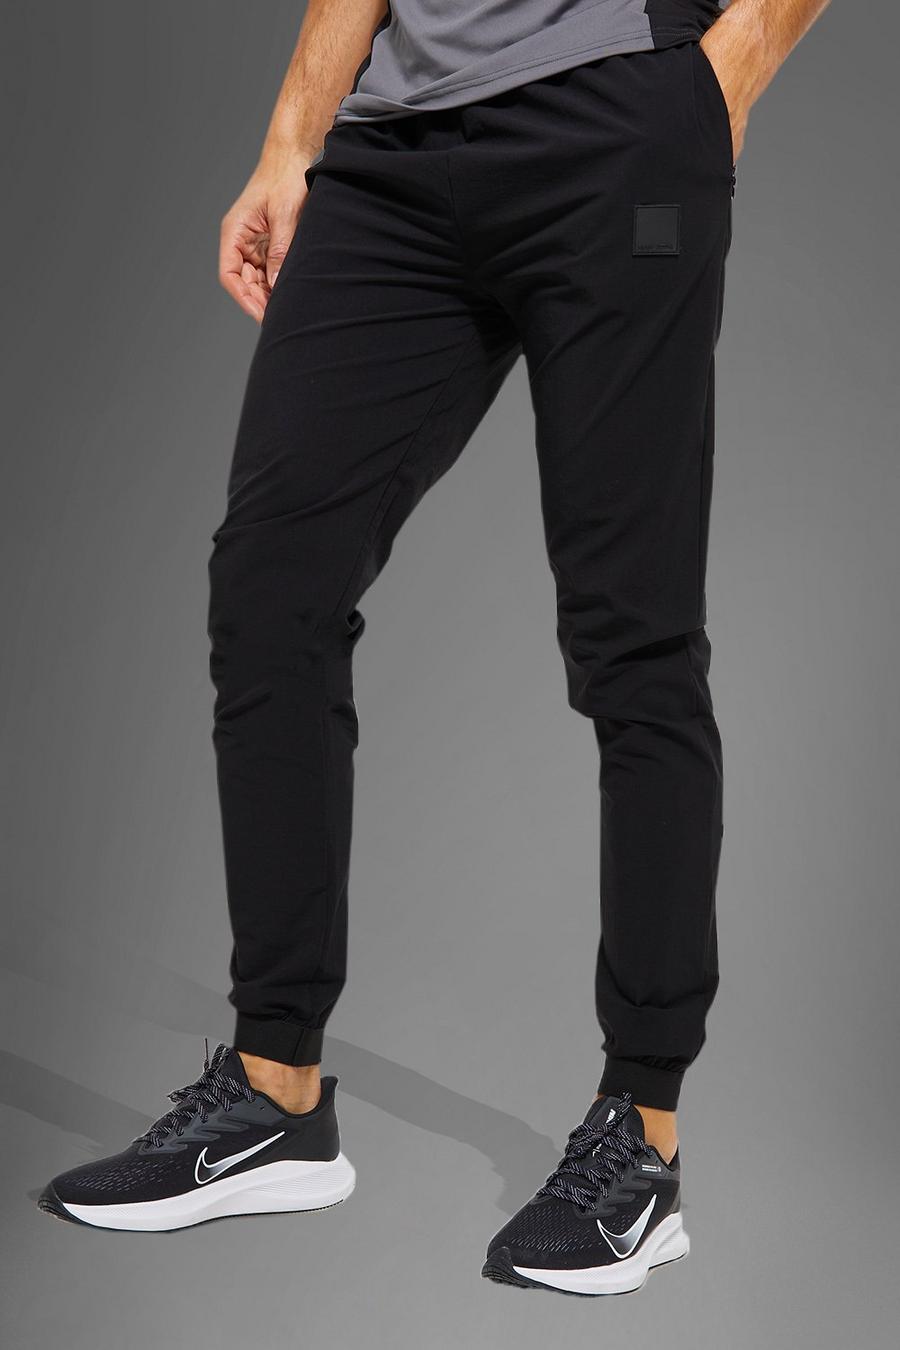 Pantaloni tuta Tall Man Active Gym in nylon con polsini elasticizzati, Black negro